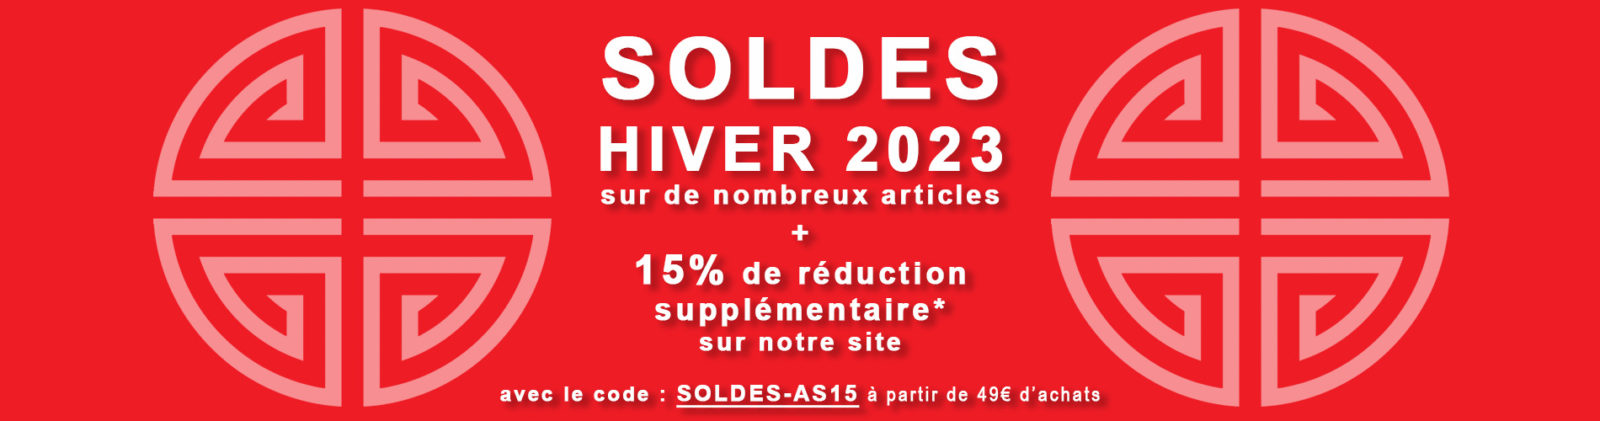 Soldes-Hiver-2023-Bannière-Accueil-v2 Accueil